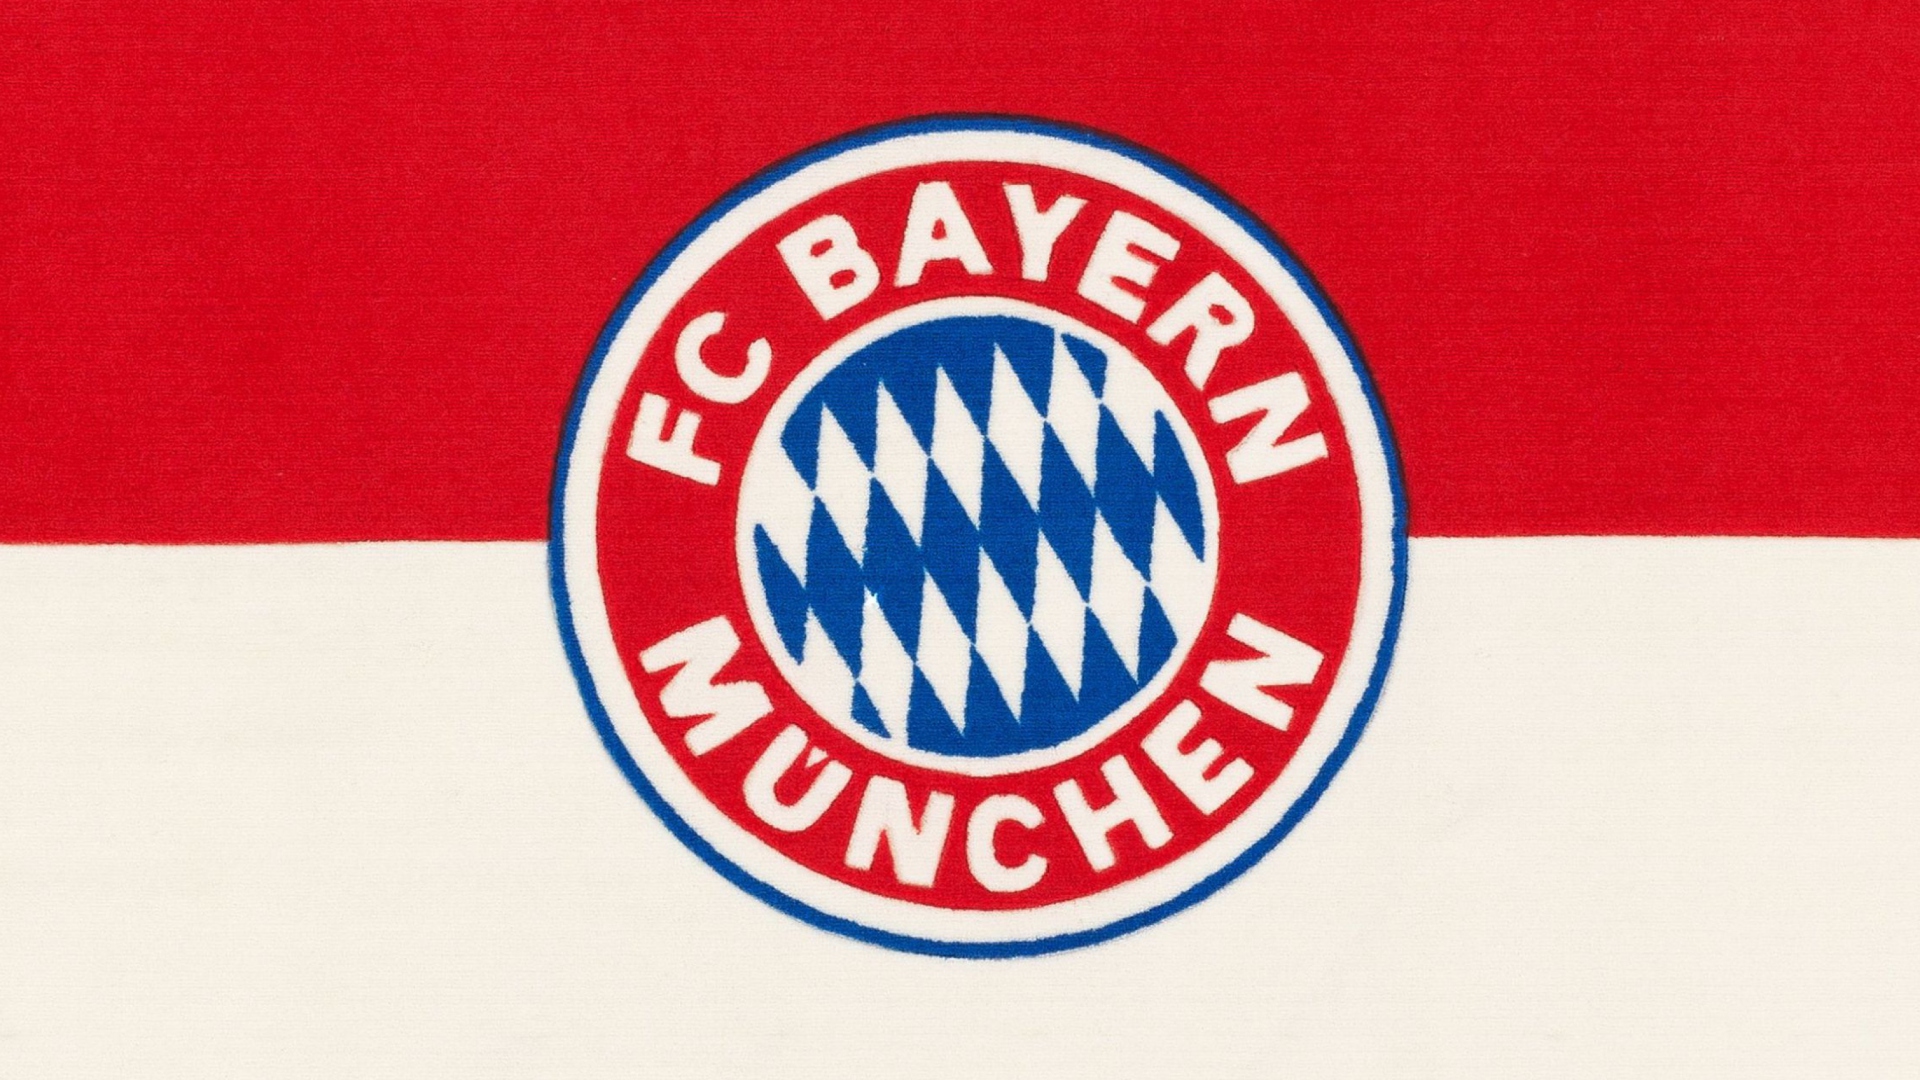 Das Fc Bayern Munchen Wallpaper 1920x1080